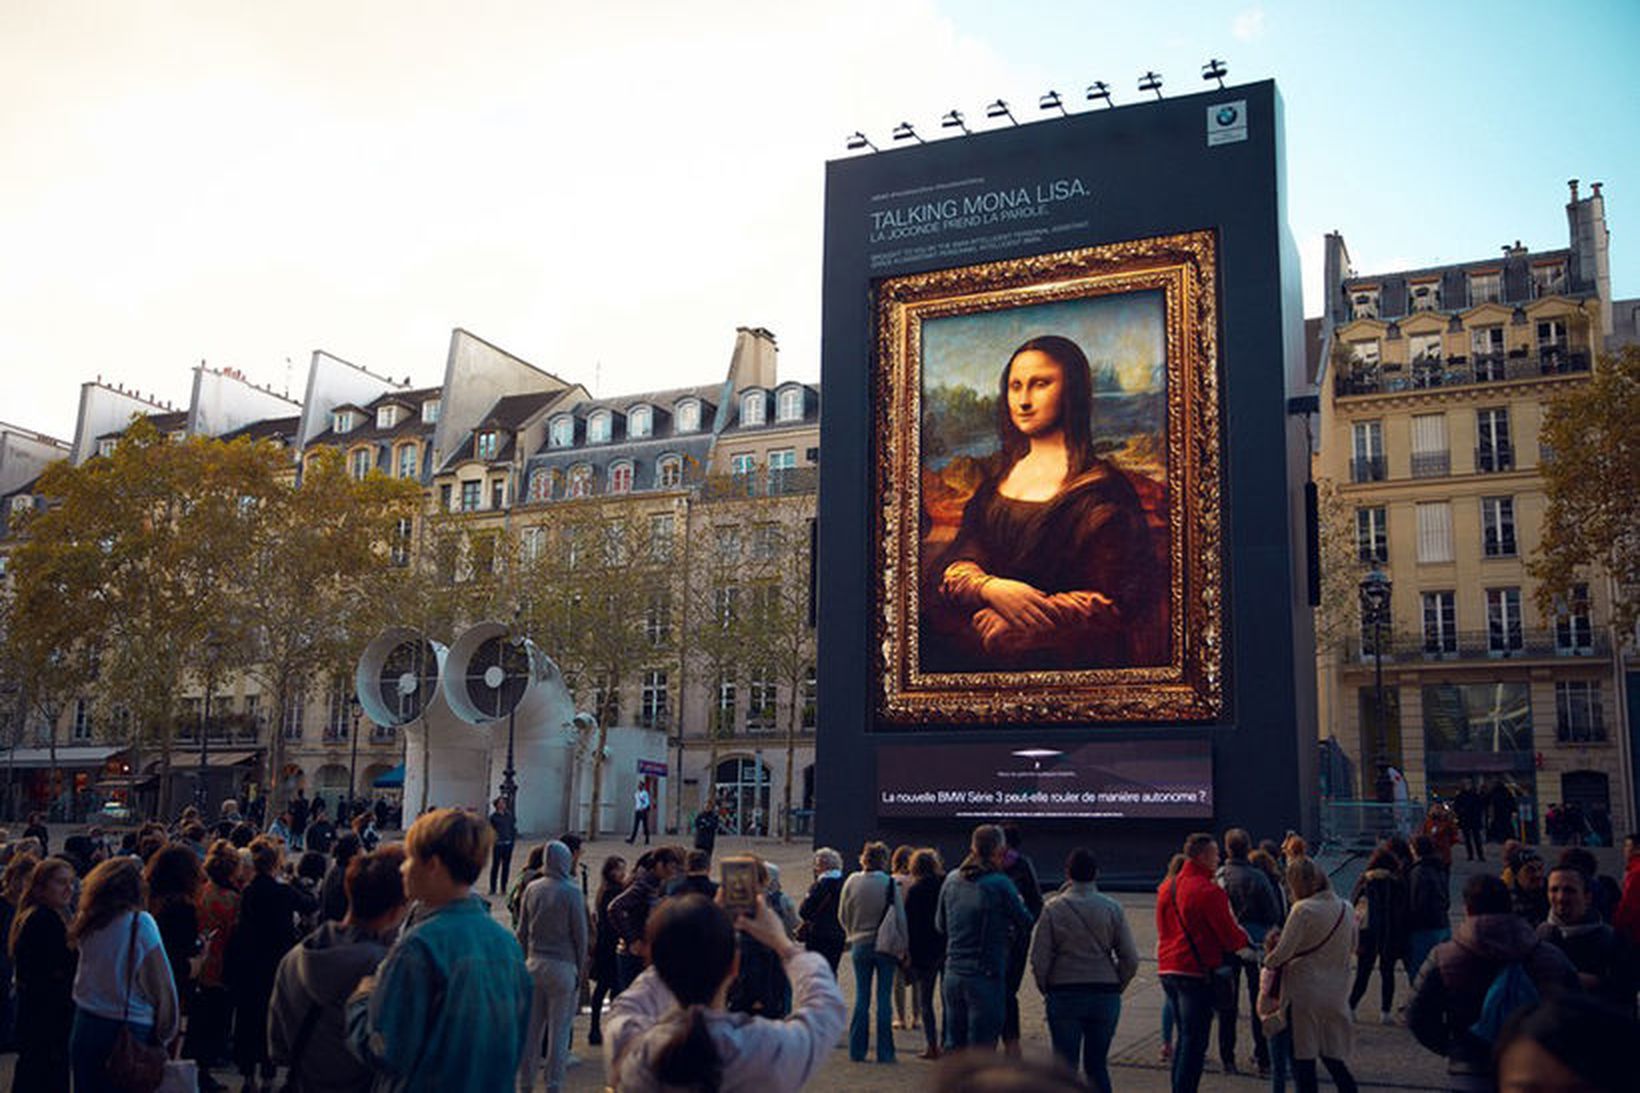 Mona Lisa vakti athygli á alþjóðlegu bílasýningunni í París á …